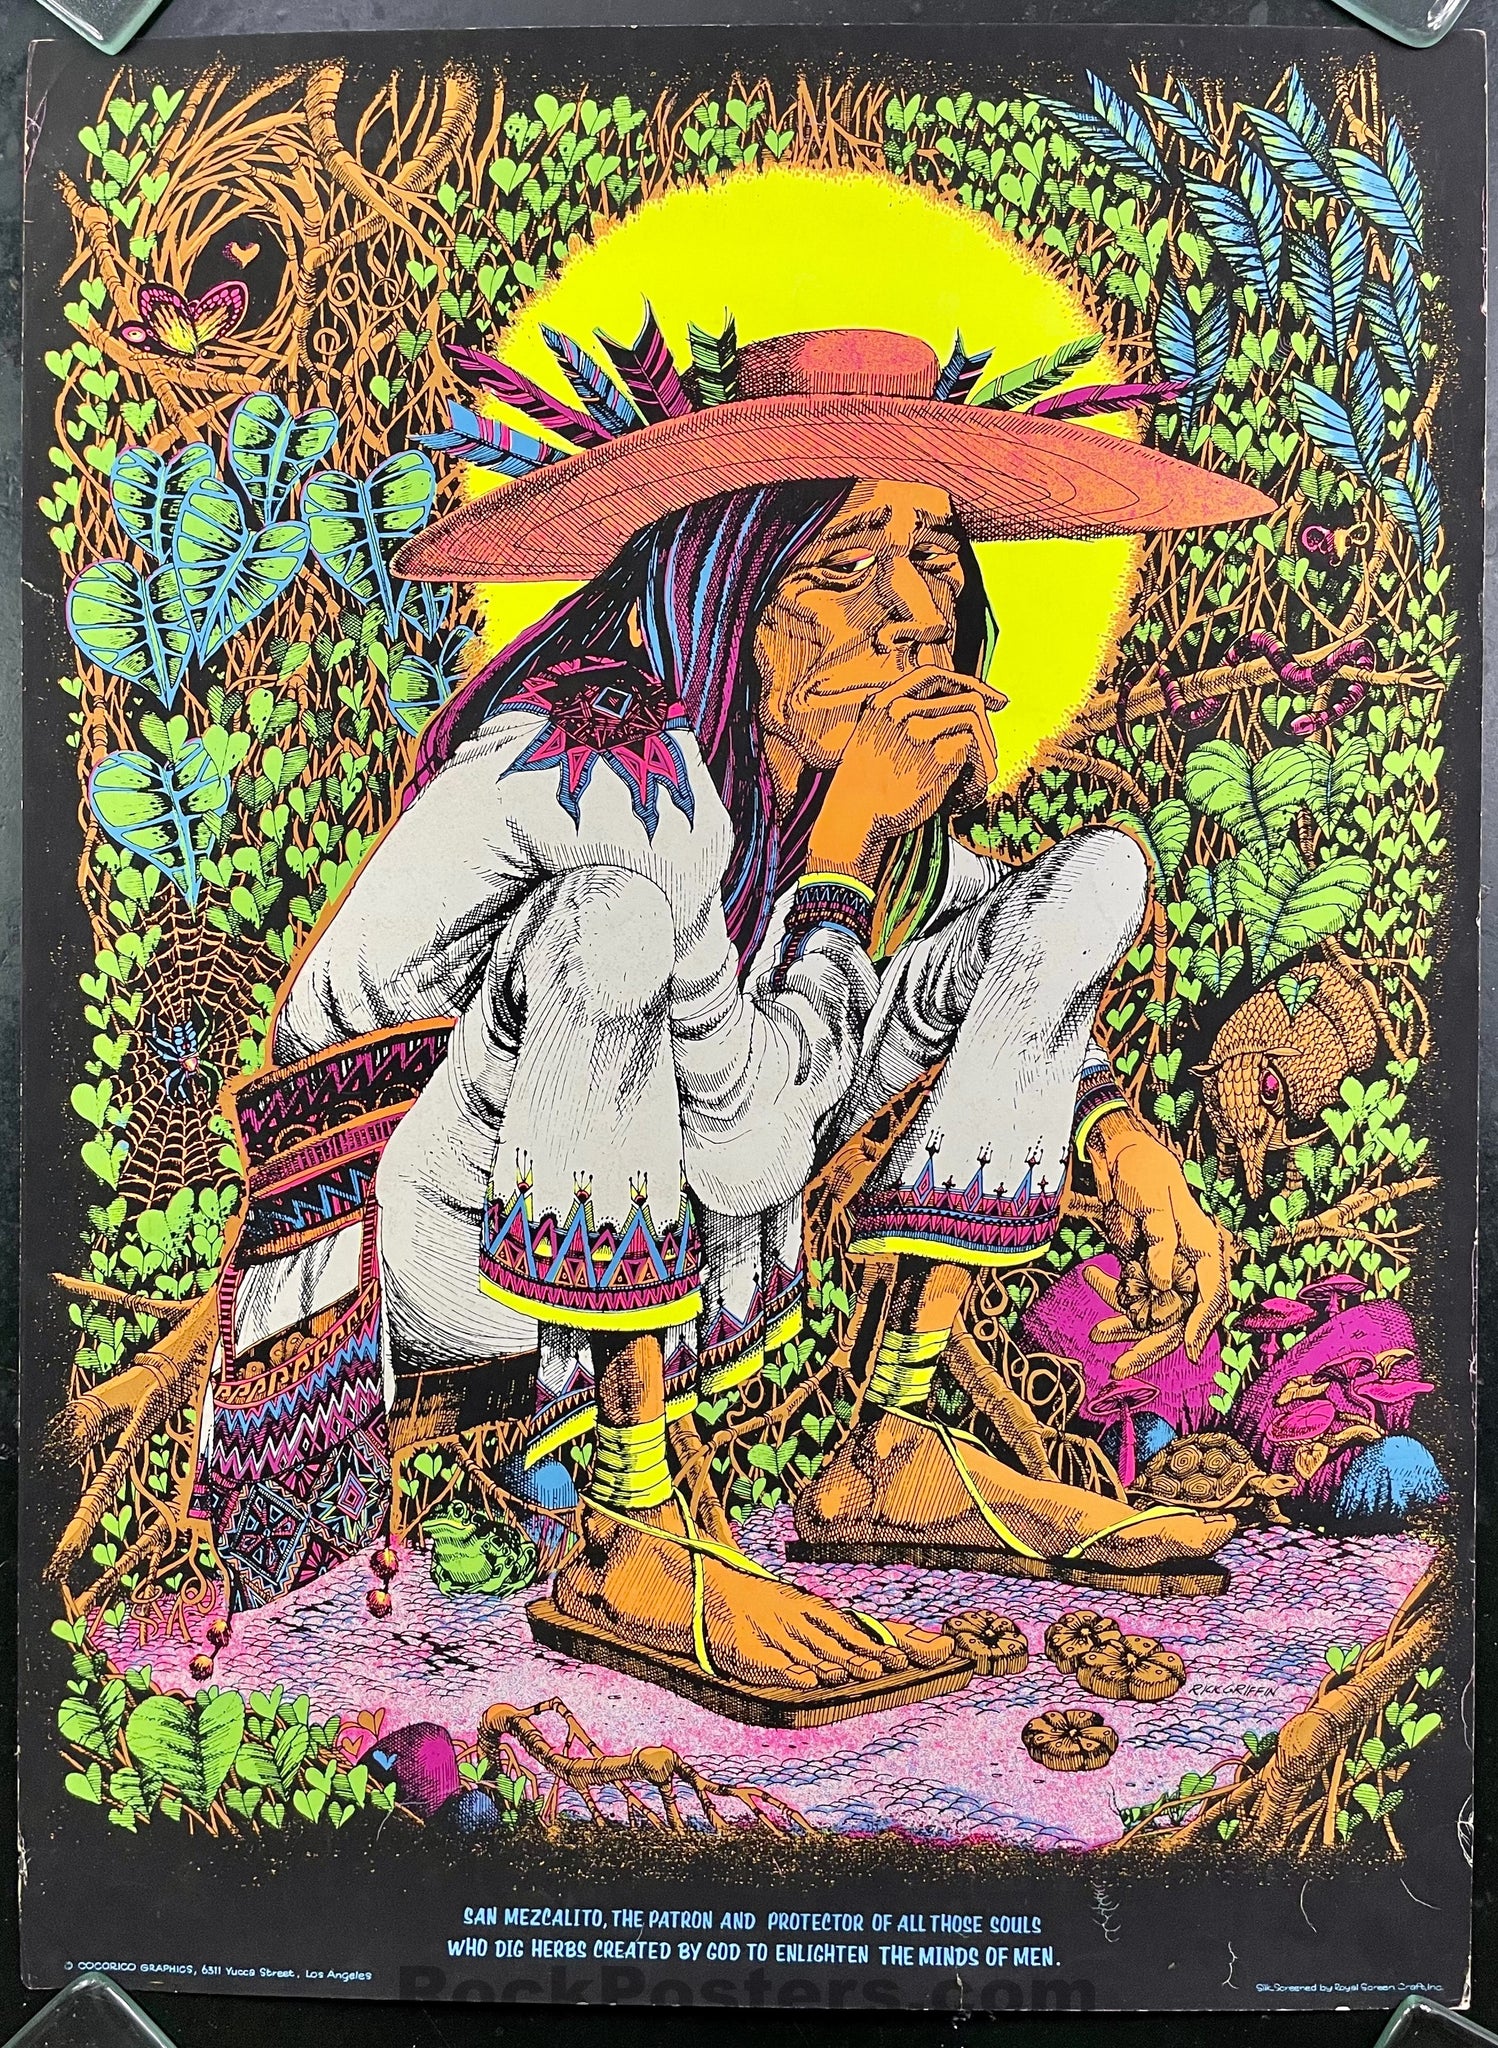 AUCTION - AOR 2.29 - Mescalito Man - Rick Griffin - 1968 Silkscreen Poster - Very Good